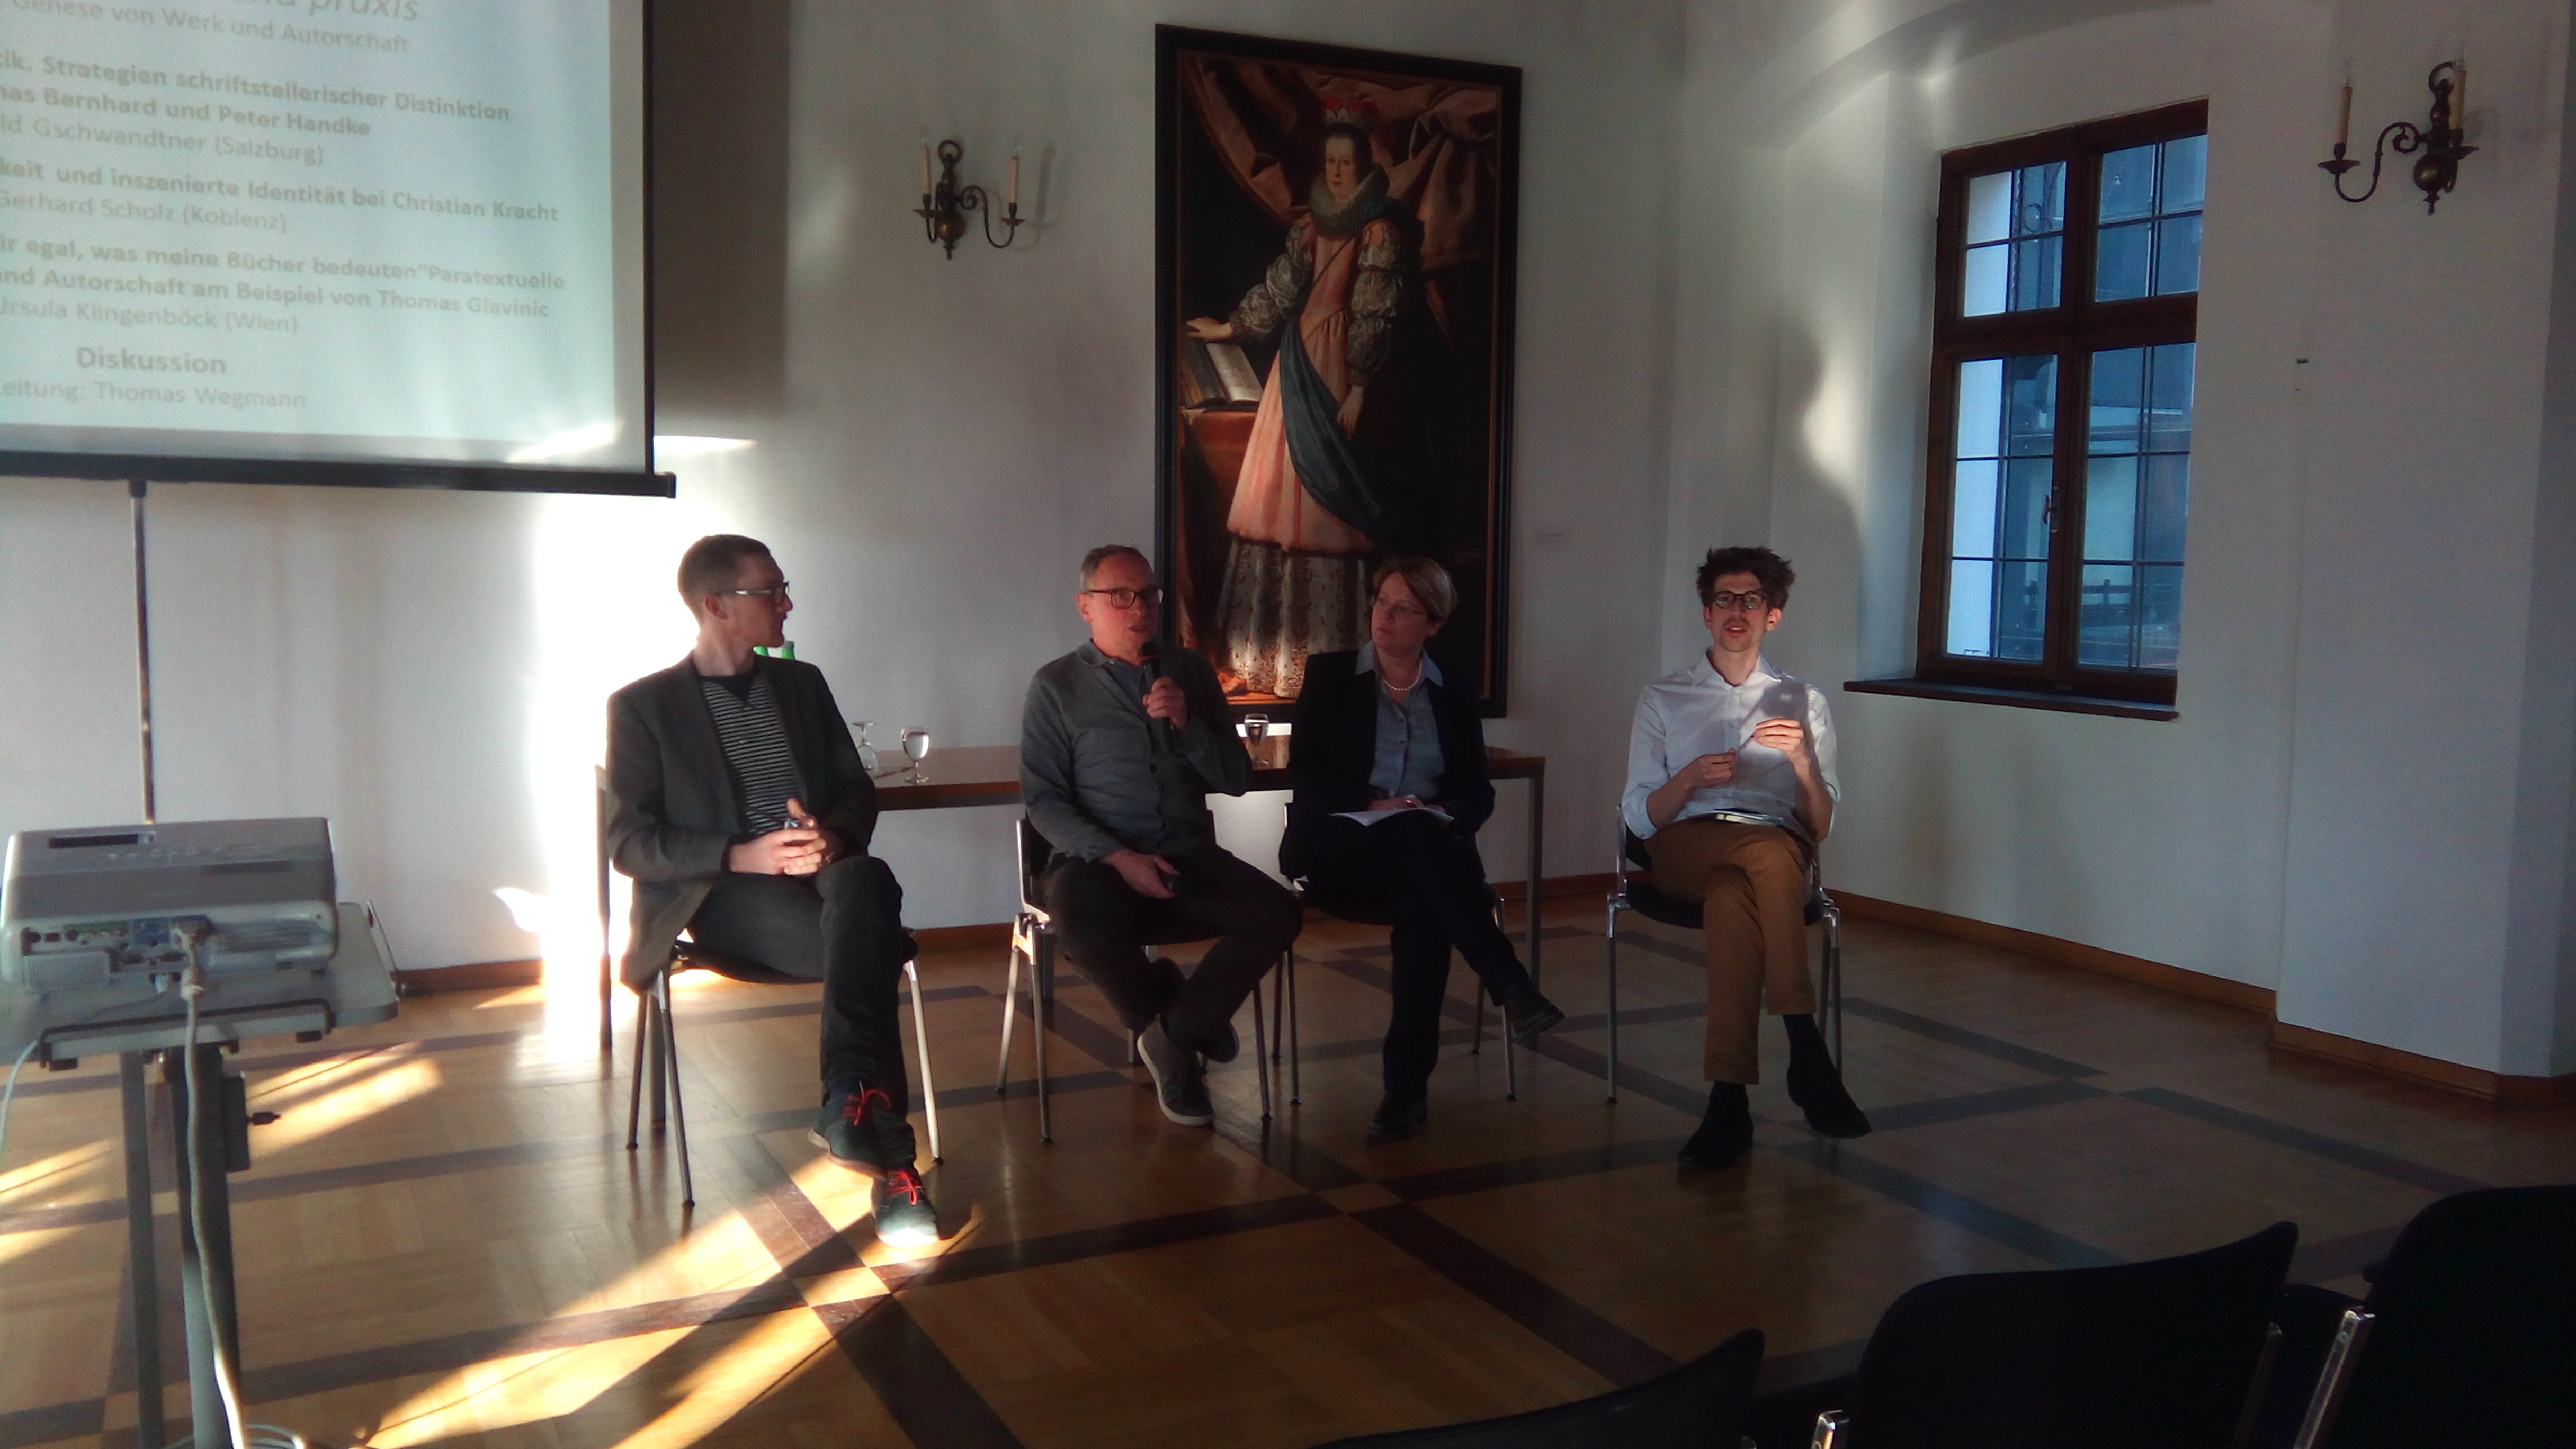 Gerhard Scholz, Thomas Wegmann, Ursula Klingenböck und Harald Gschwandtner in der letzten Diskussion der Tagung